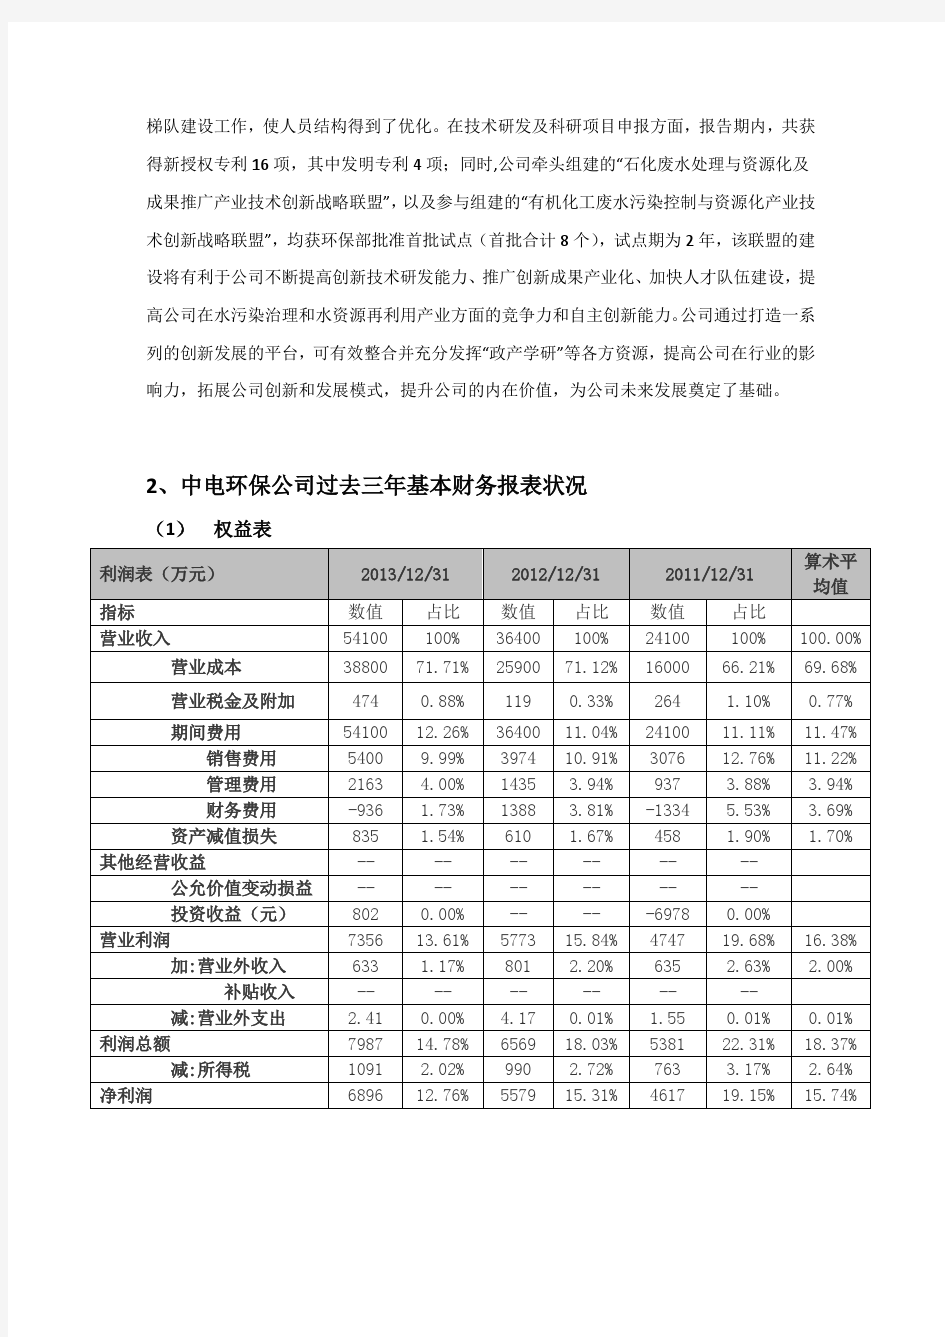 南京中电环保股份有限公司经营情况概述